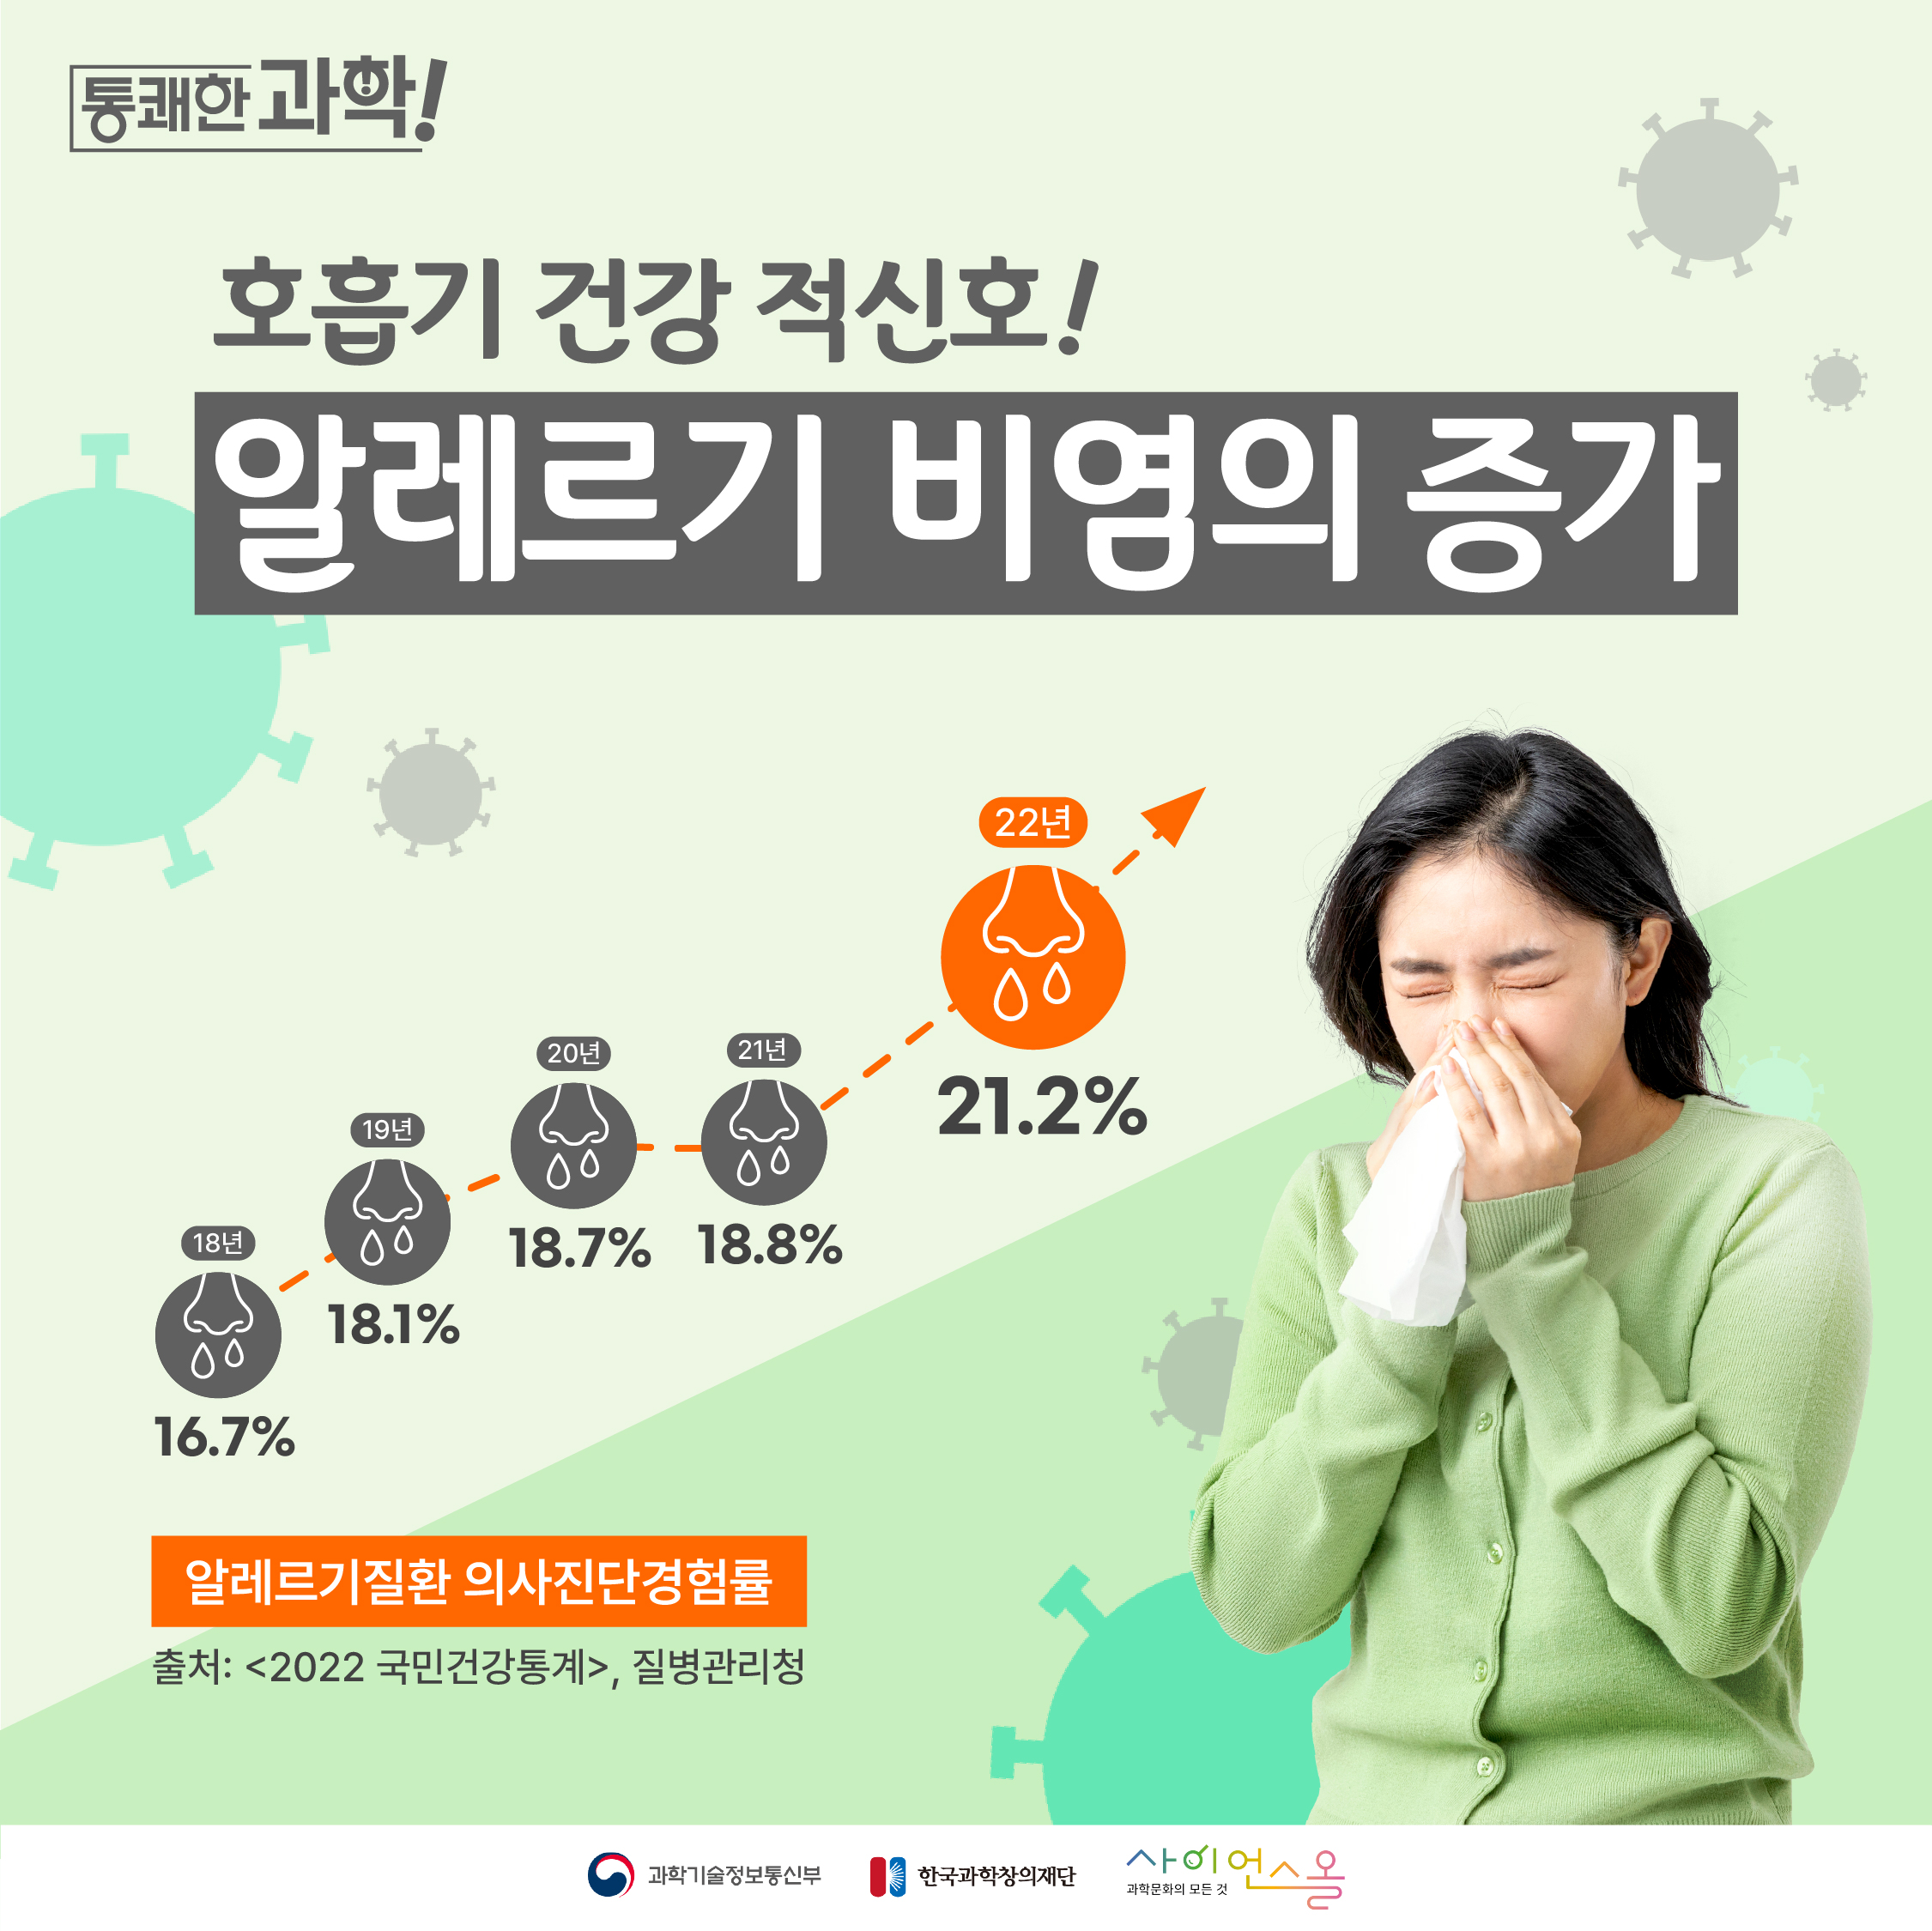 [통쾌한 과학] 호흡기 건강 적신호! 알레르기 비염의 증가 